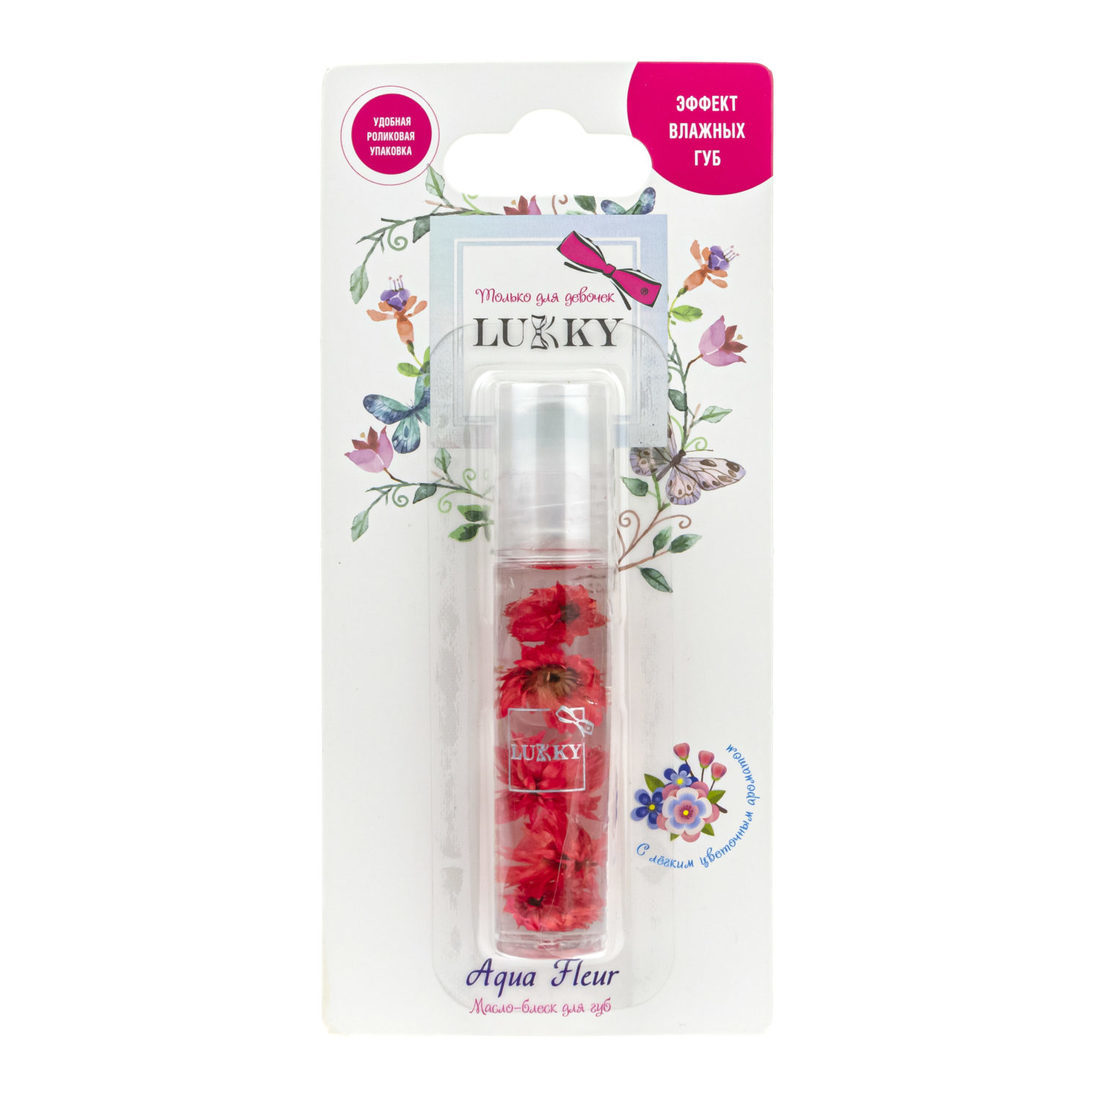 Блеск-масло для губ в роликовой упаковке с красными цветами, 7,5 мл Lukky Т22005